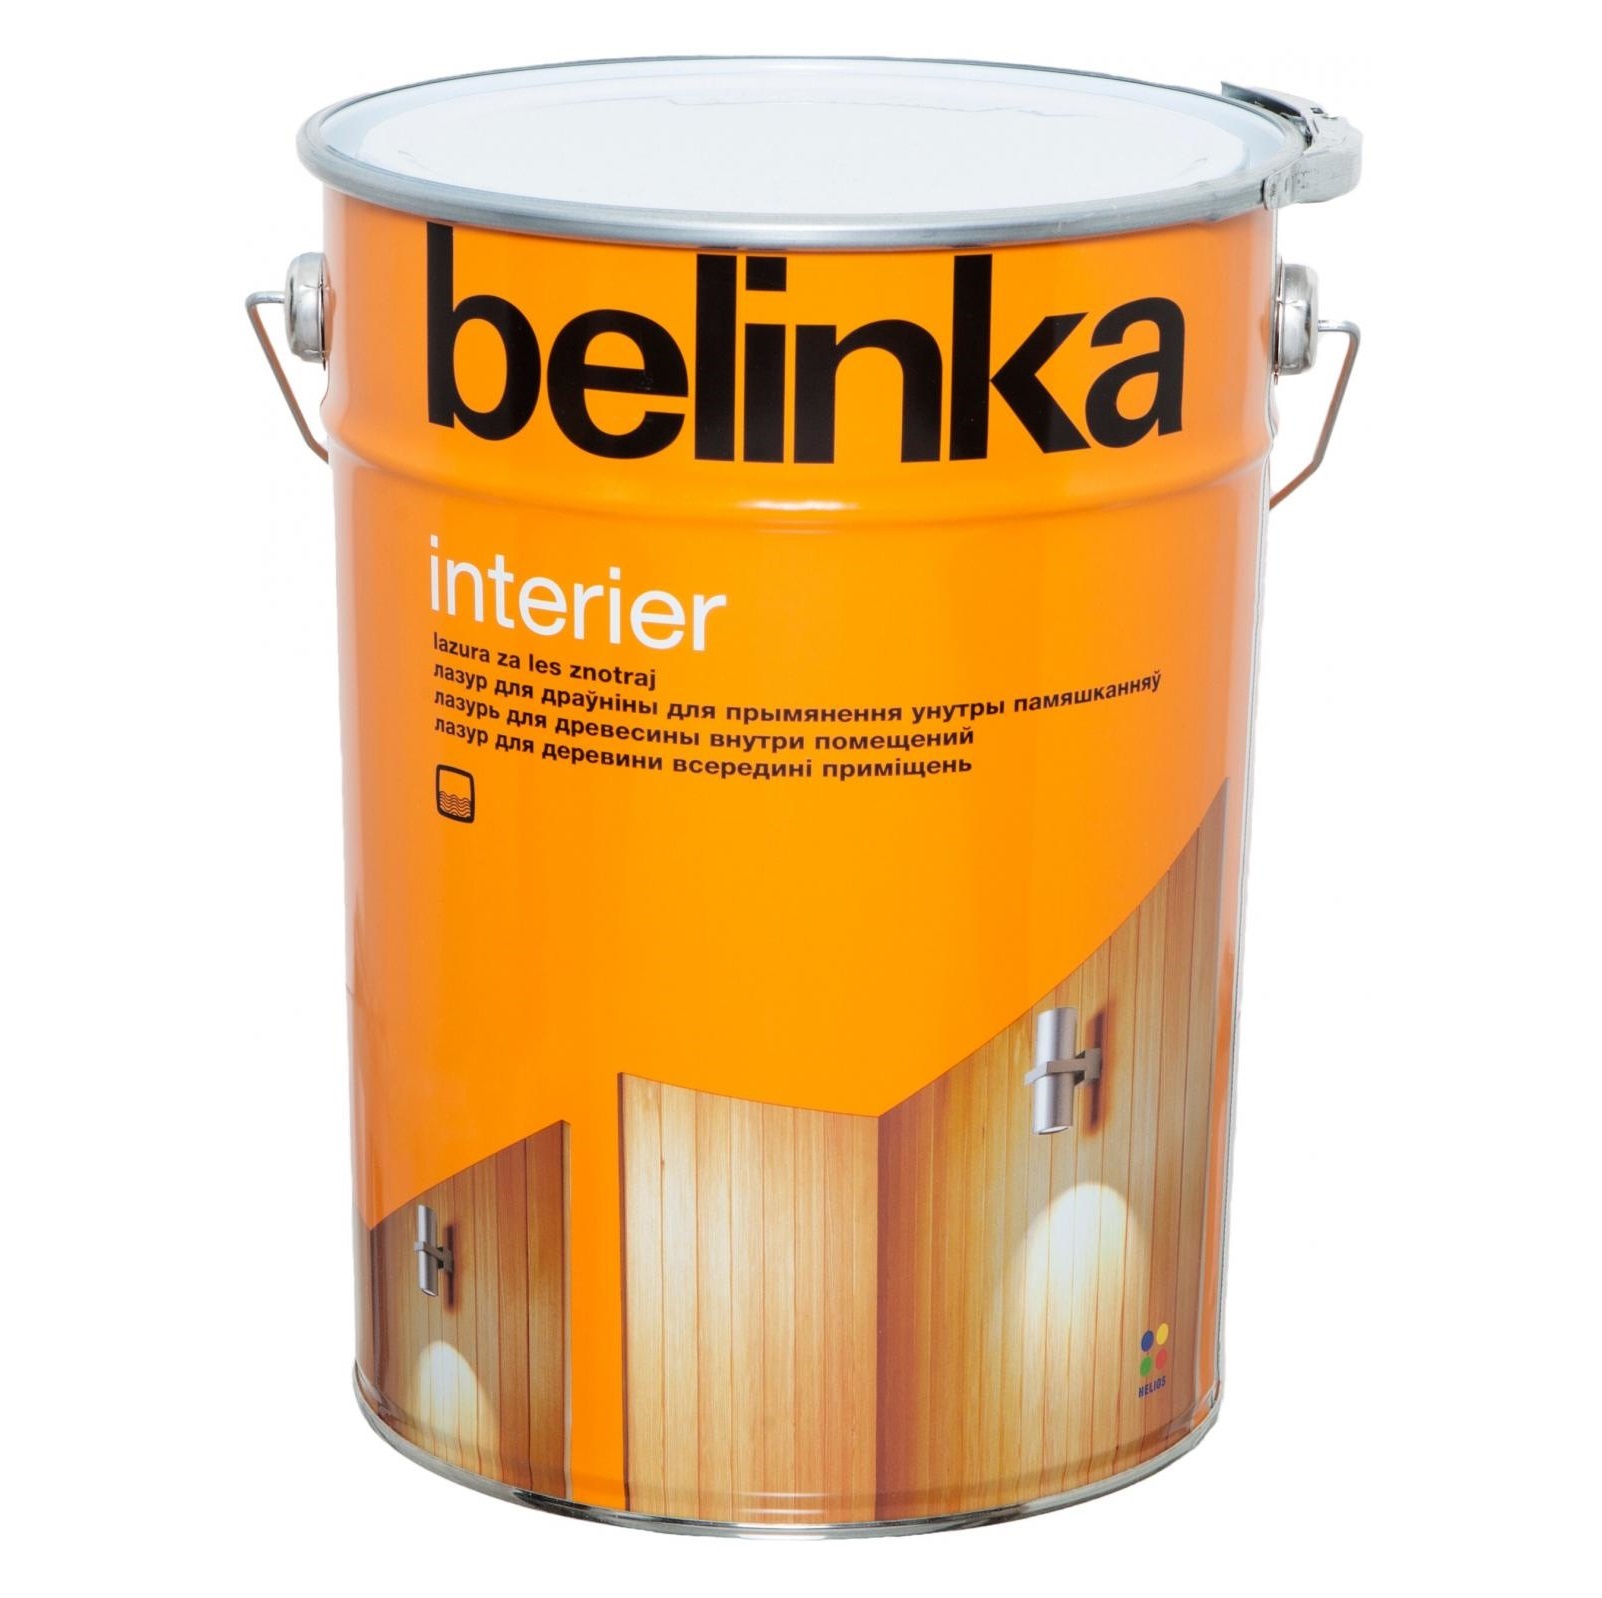 Лазурь Belinka Interier №69 2.5л горячий шоколад лазурь belinka interier 67 0 75л ориентально оранжевый